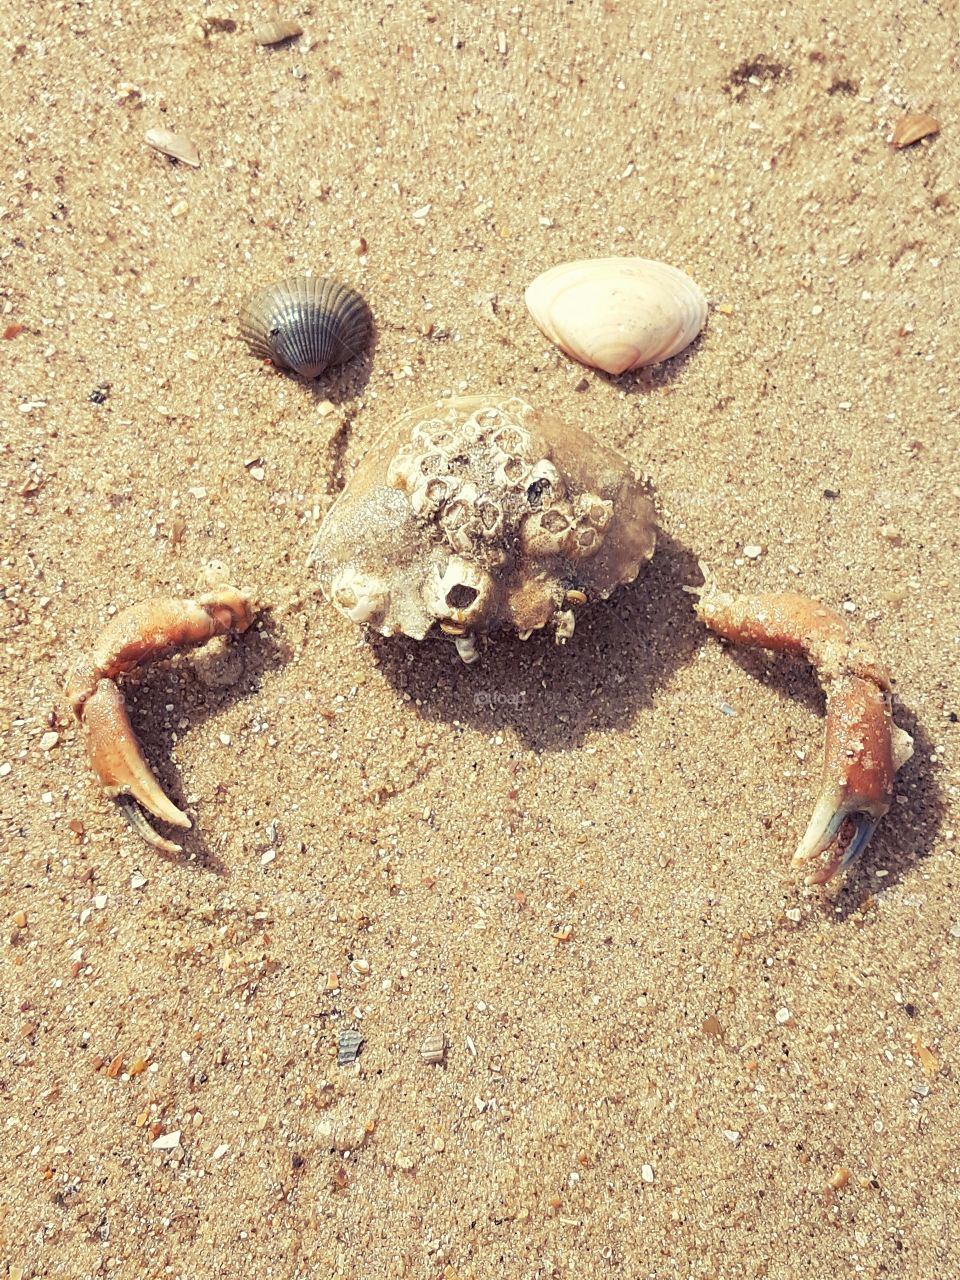 It's a Crab !